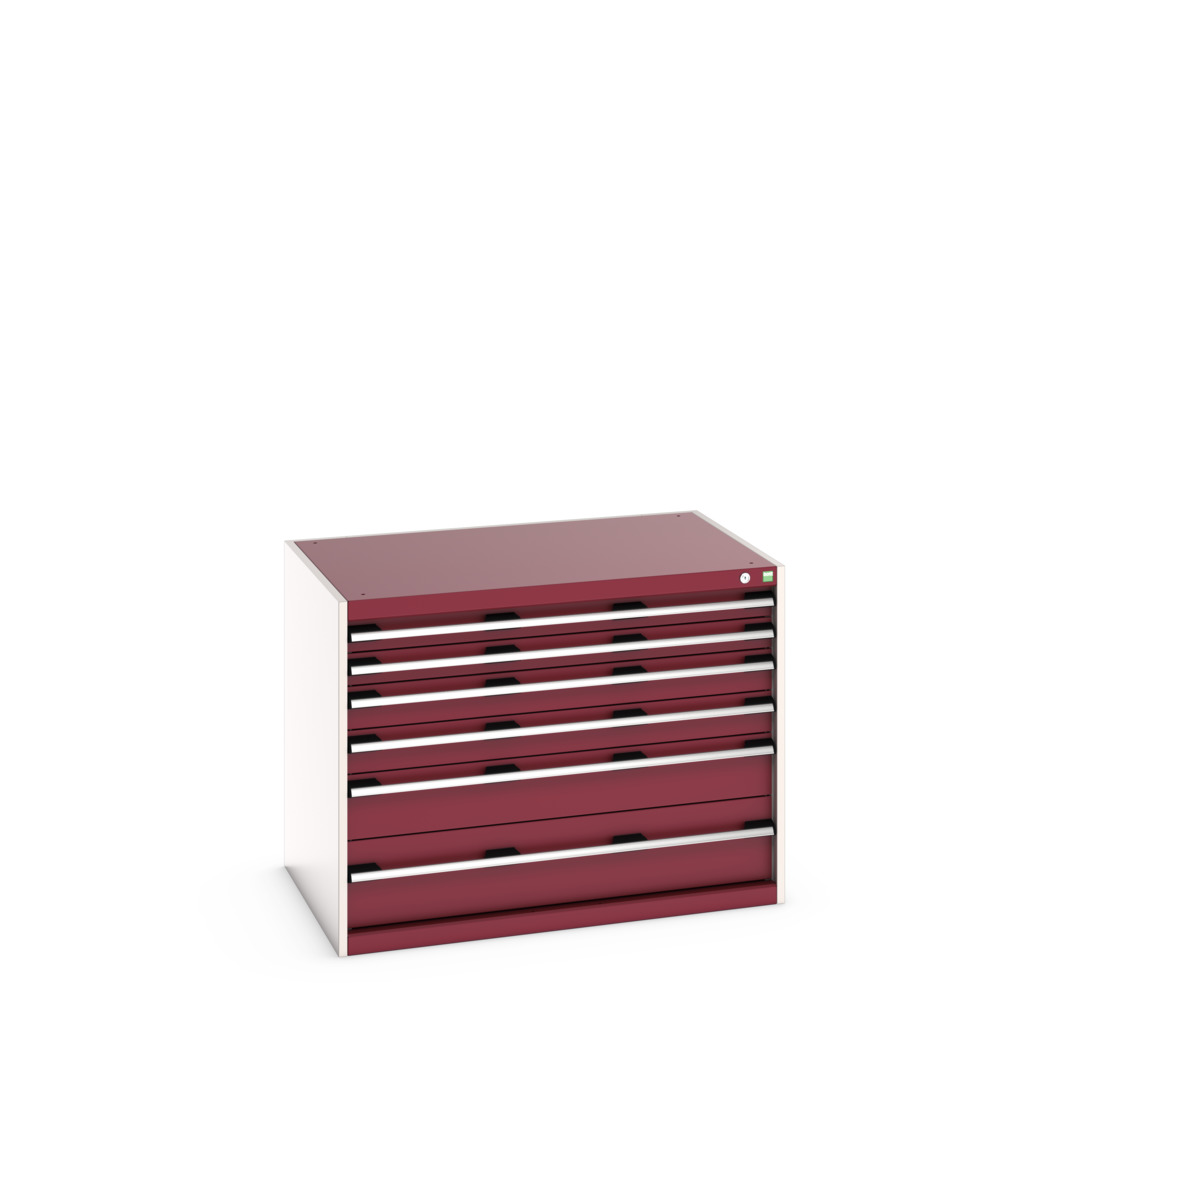 40029085.24V - cubio drawer cabinet